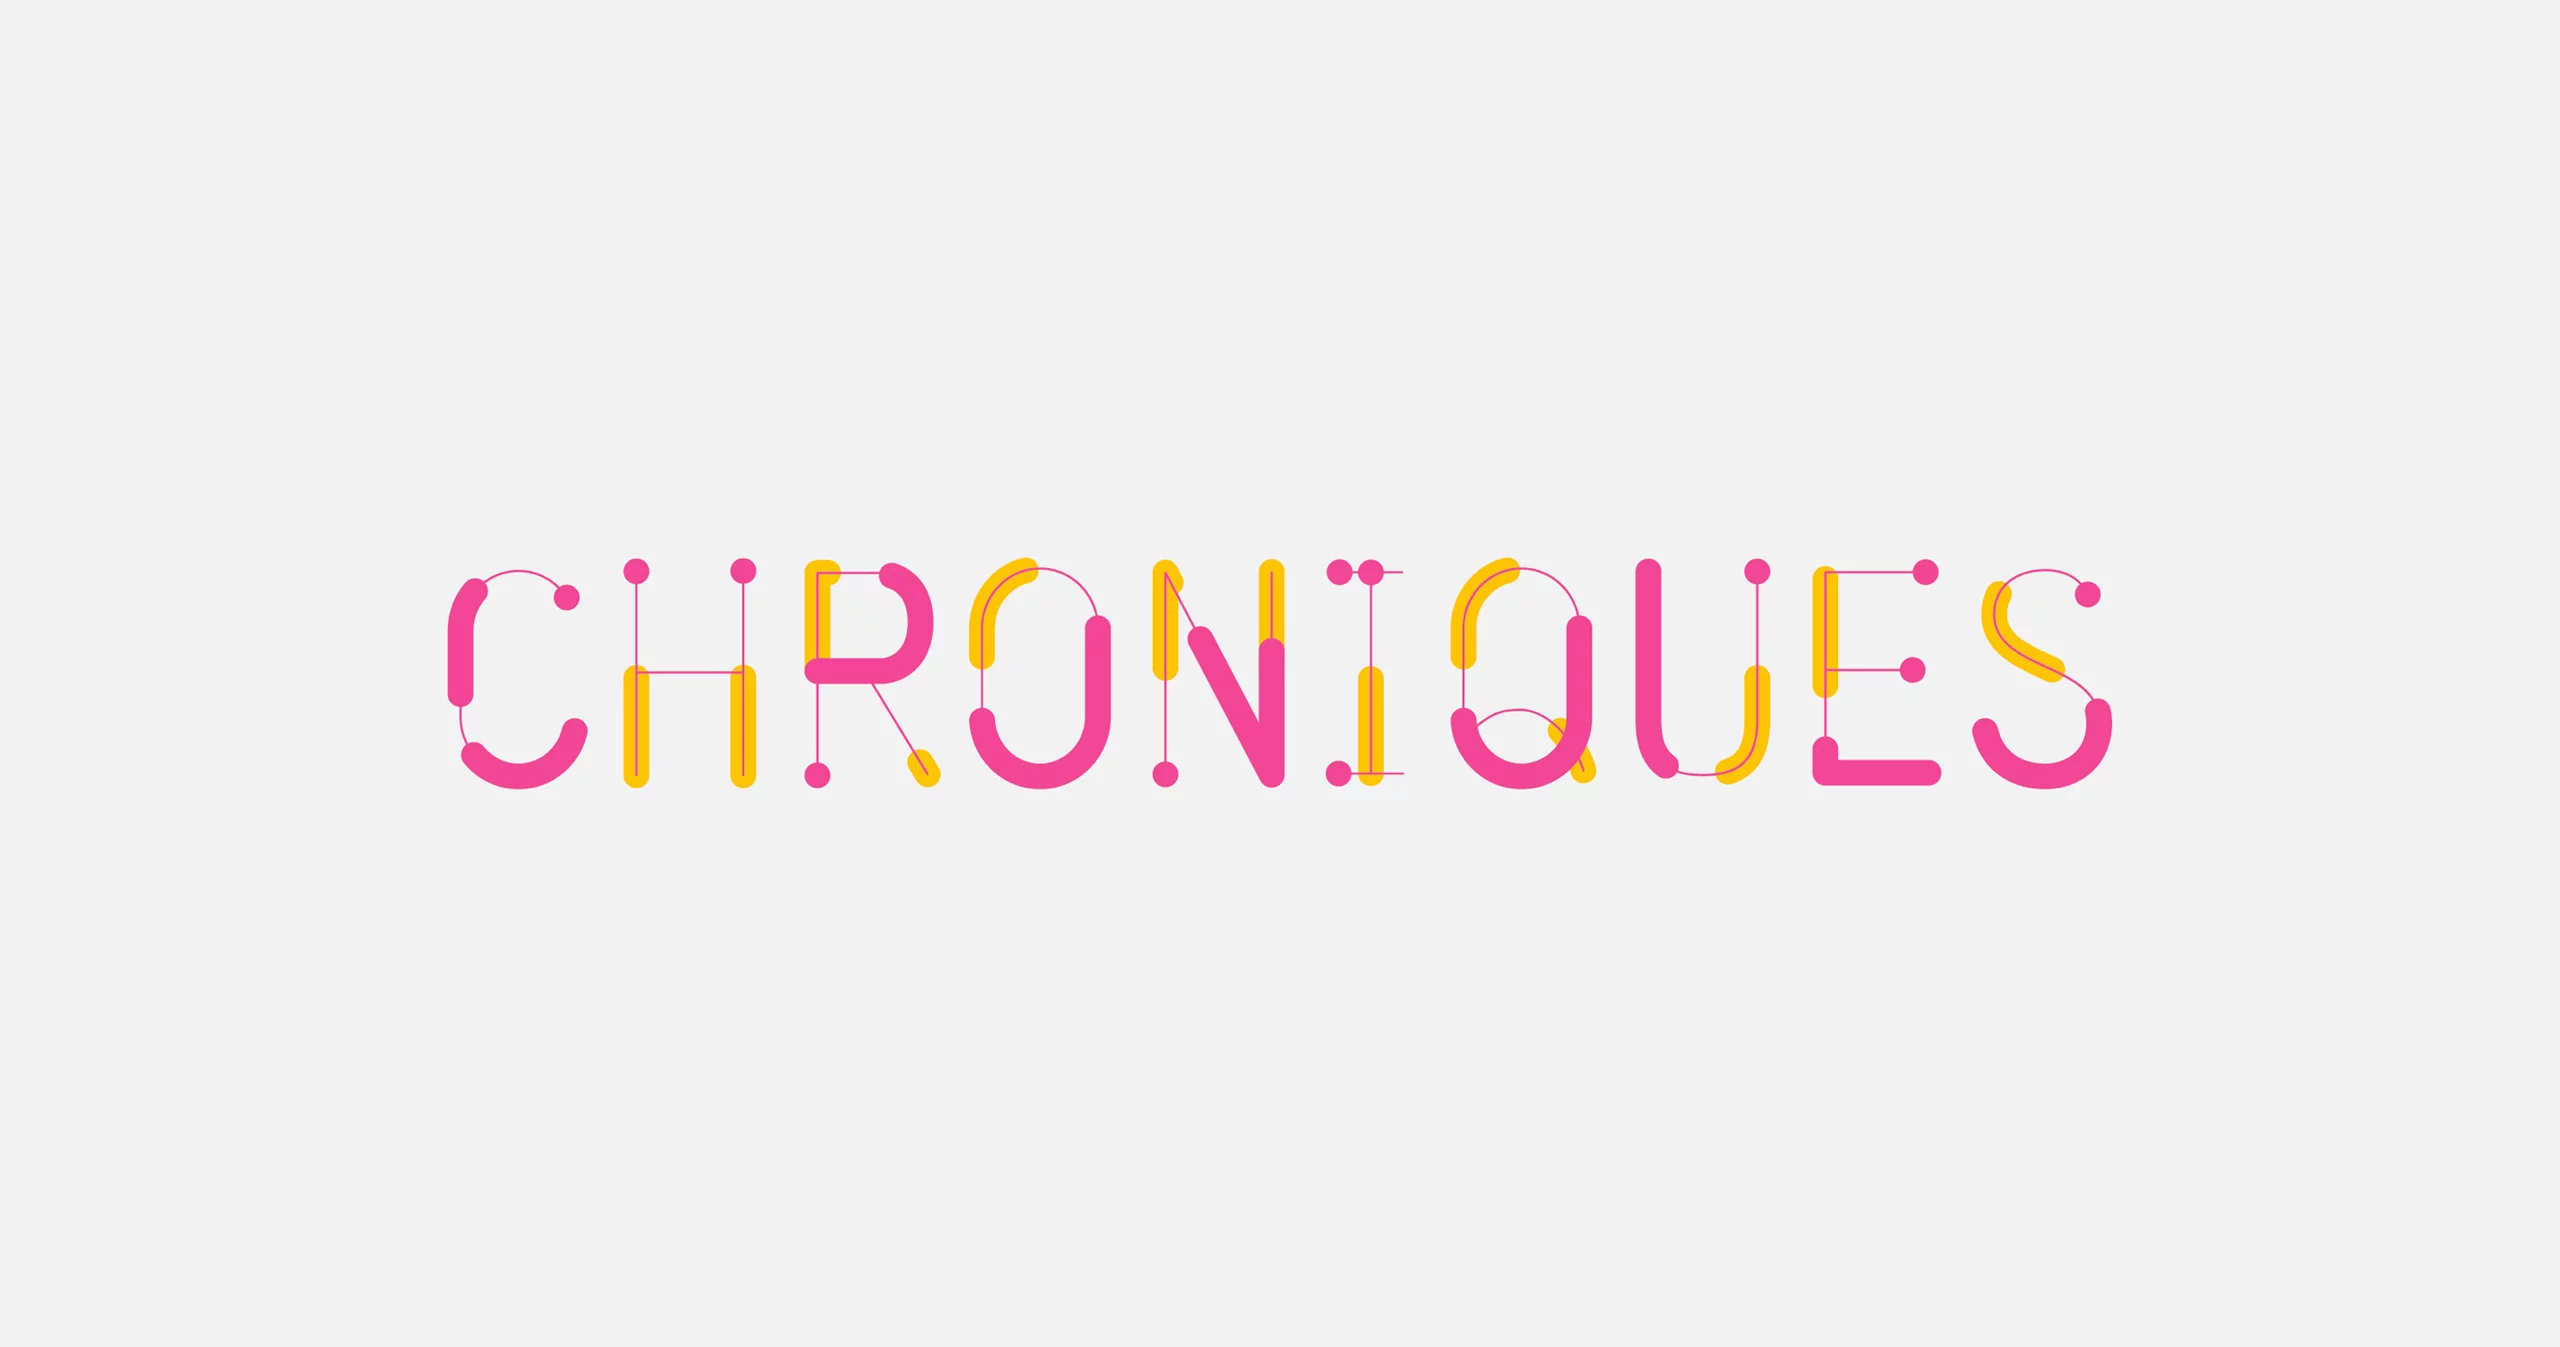 Logotype de Festival Chroniques, issu d'une typographie composée de forme arrondis jaunes et roses liées par des filets